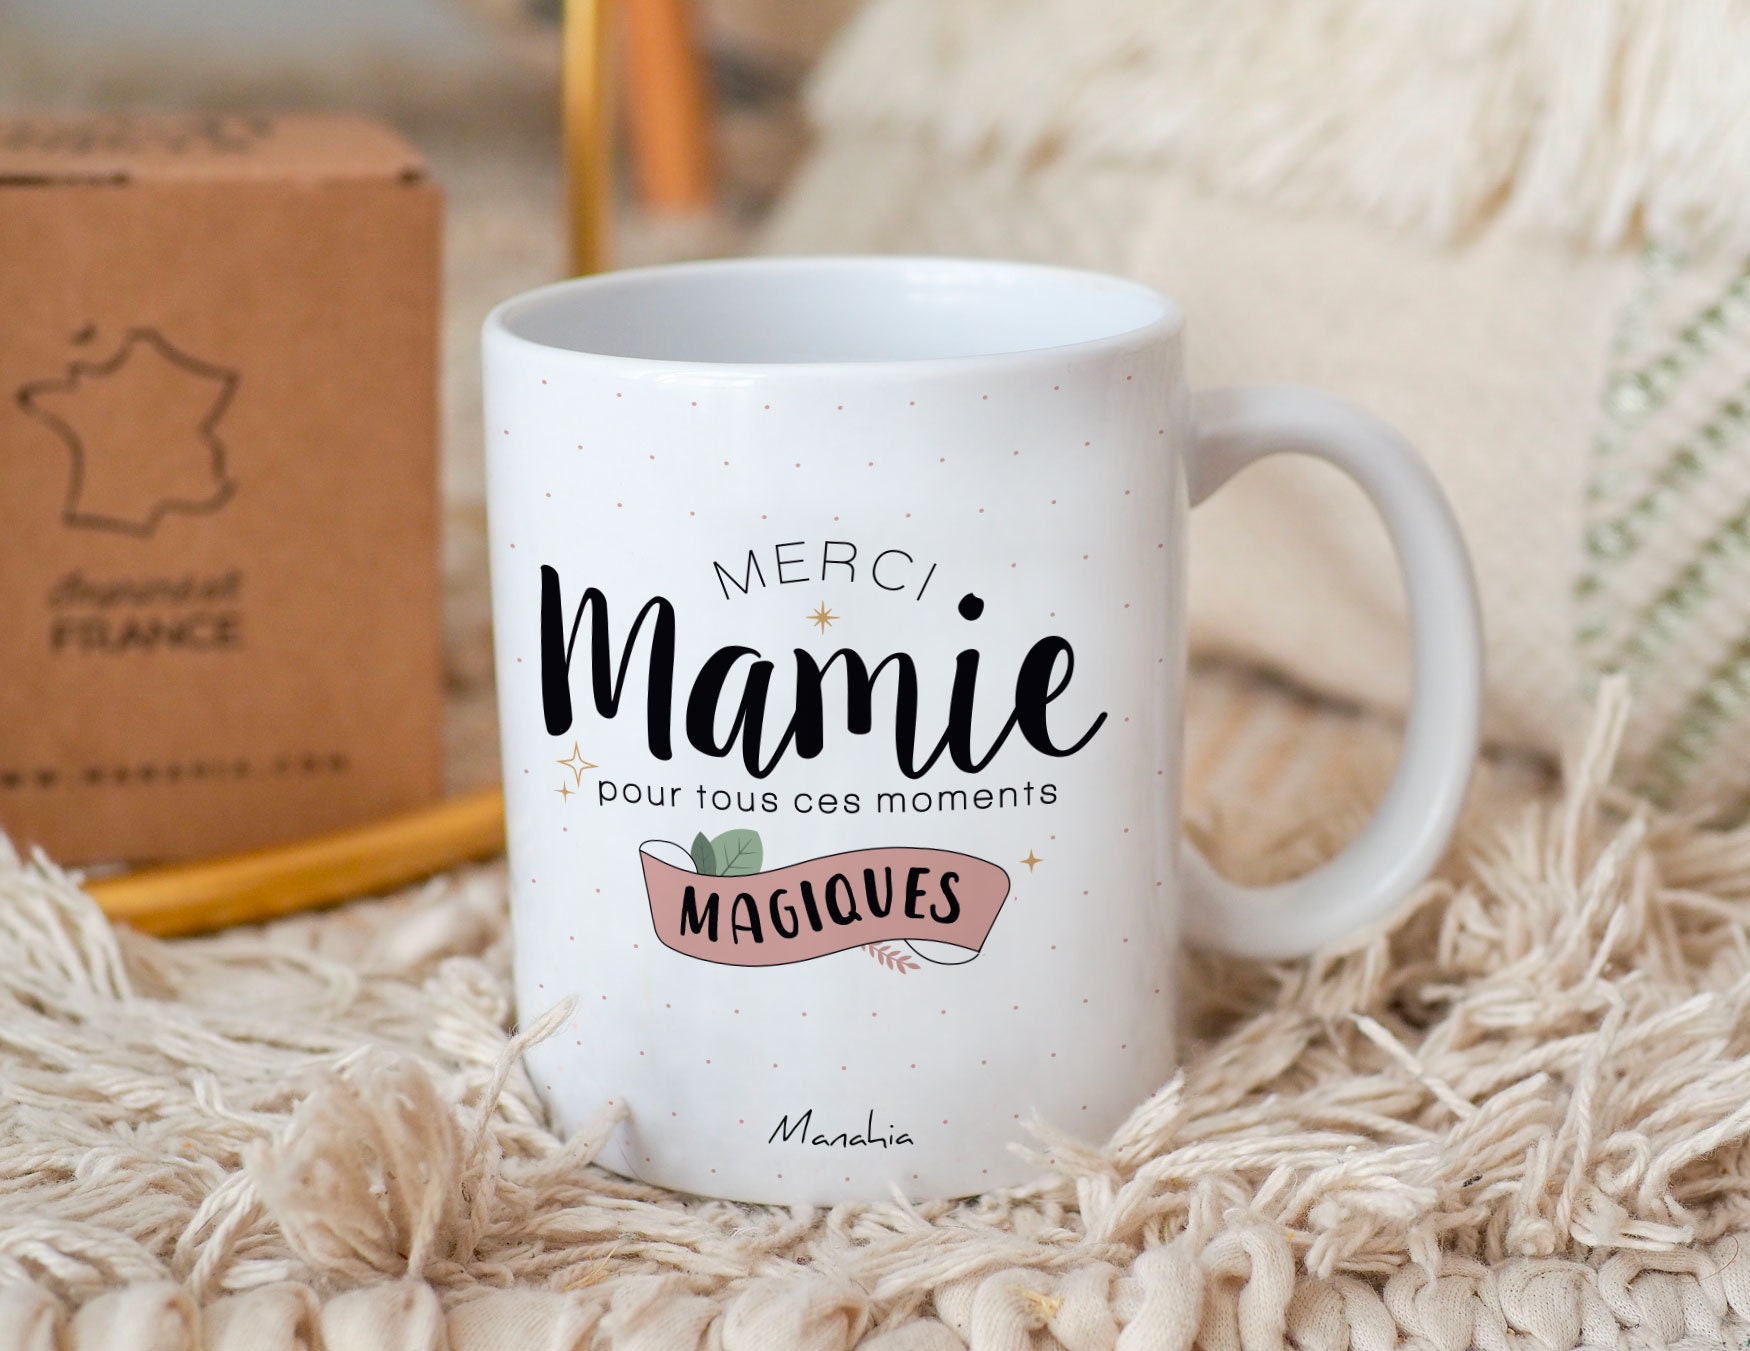 Manahia Mug Cadeau Belle mère - Belle Maman d'exception - Avec Boite Kraft  - Imprimé en France - 330